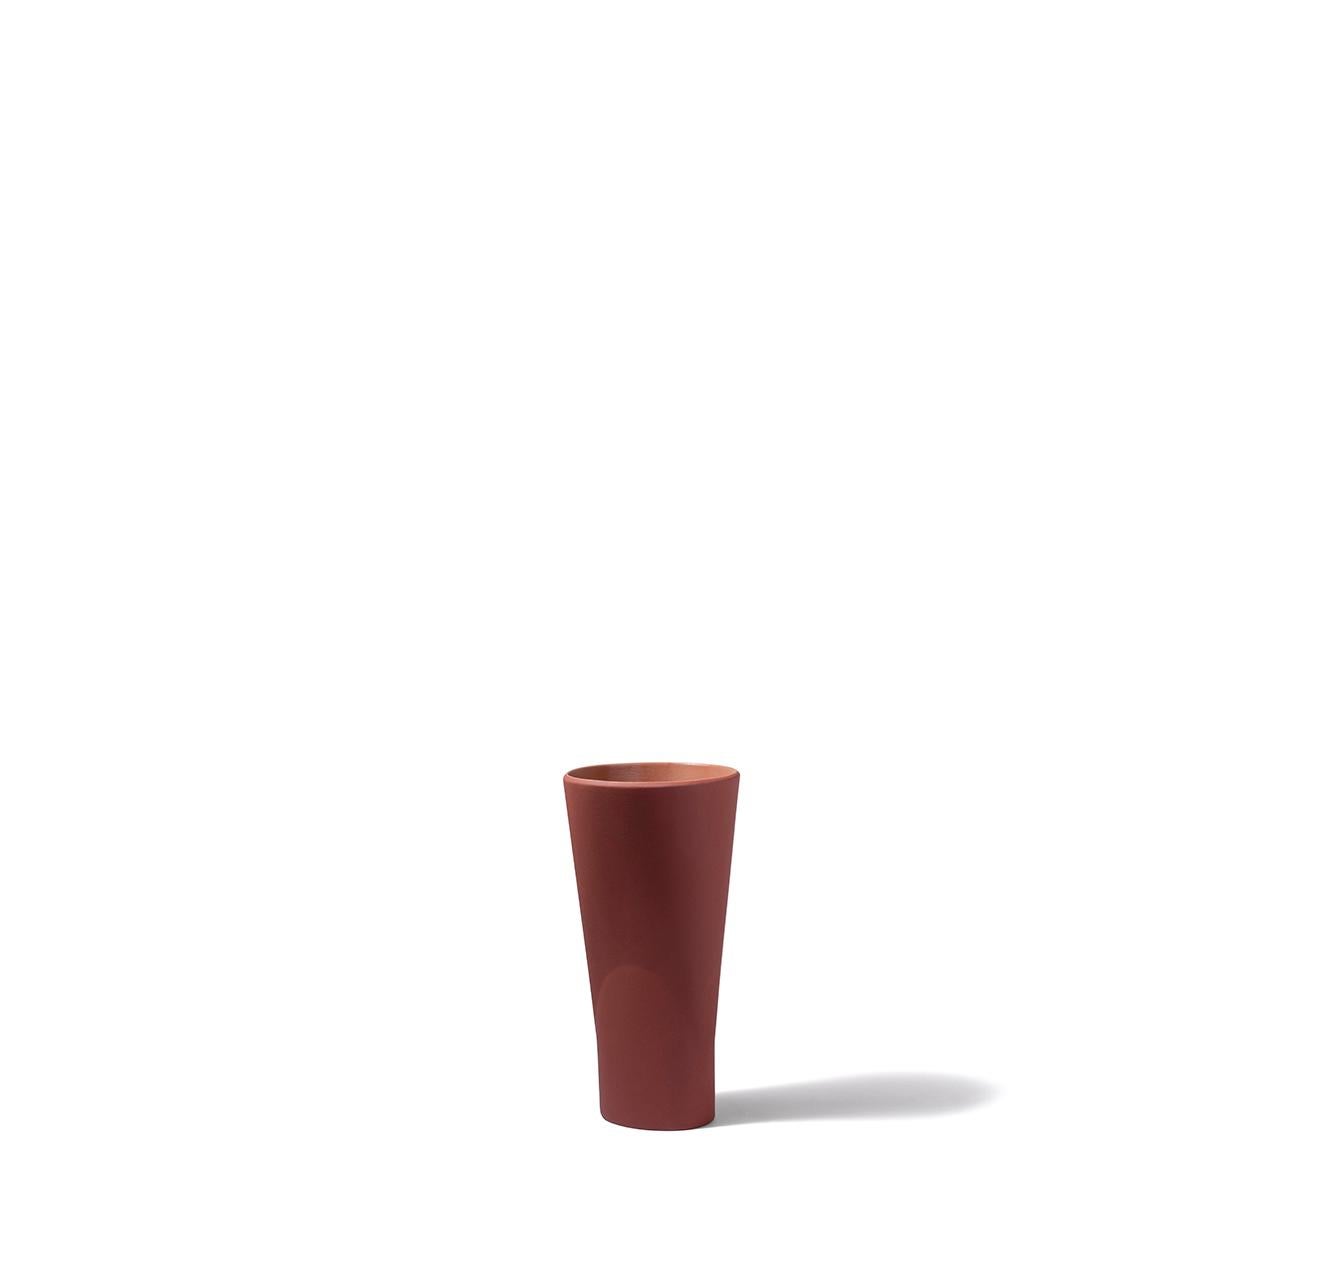 Chamalea est un vase en céramique conçu par Chiara Andreatti pour Paola C., et il fait partie de la collection Coquille, une famille composée de porte-gâteaux, de centres de table, de coupes à fruits et de vases, inspirés par des formes naturelles